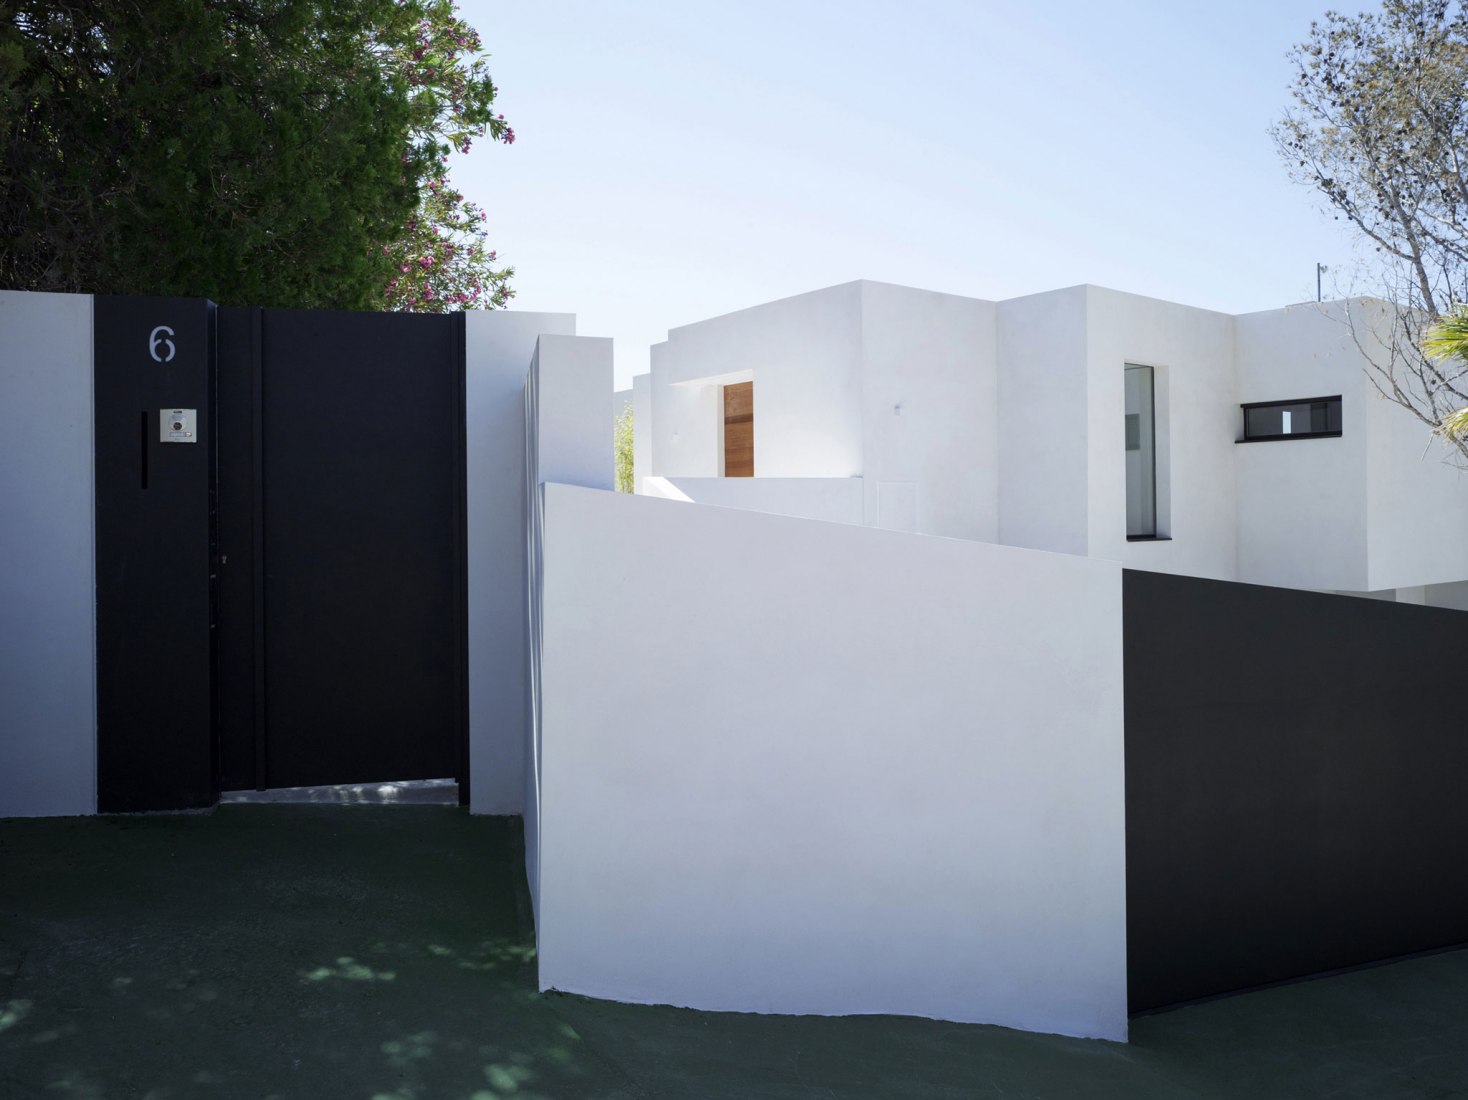 Casa Punta Albir by rgb arquitectos, Altea, Alicante. Photograph © Mayte Piera